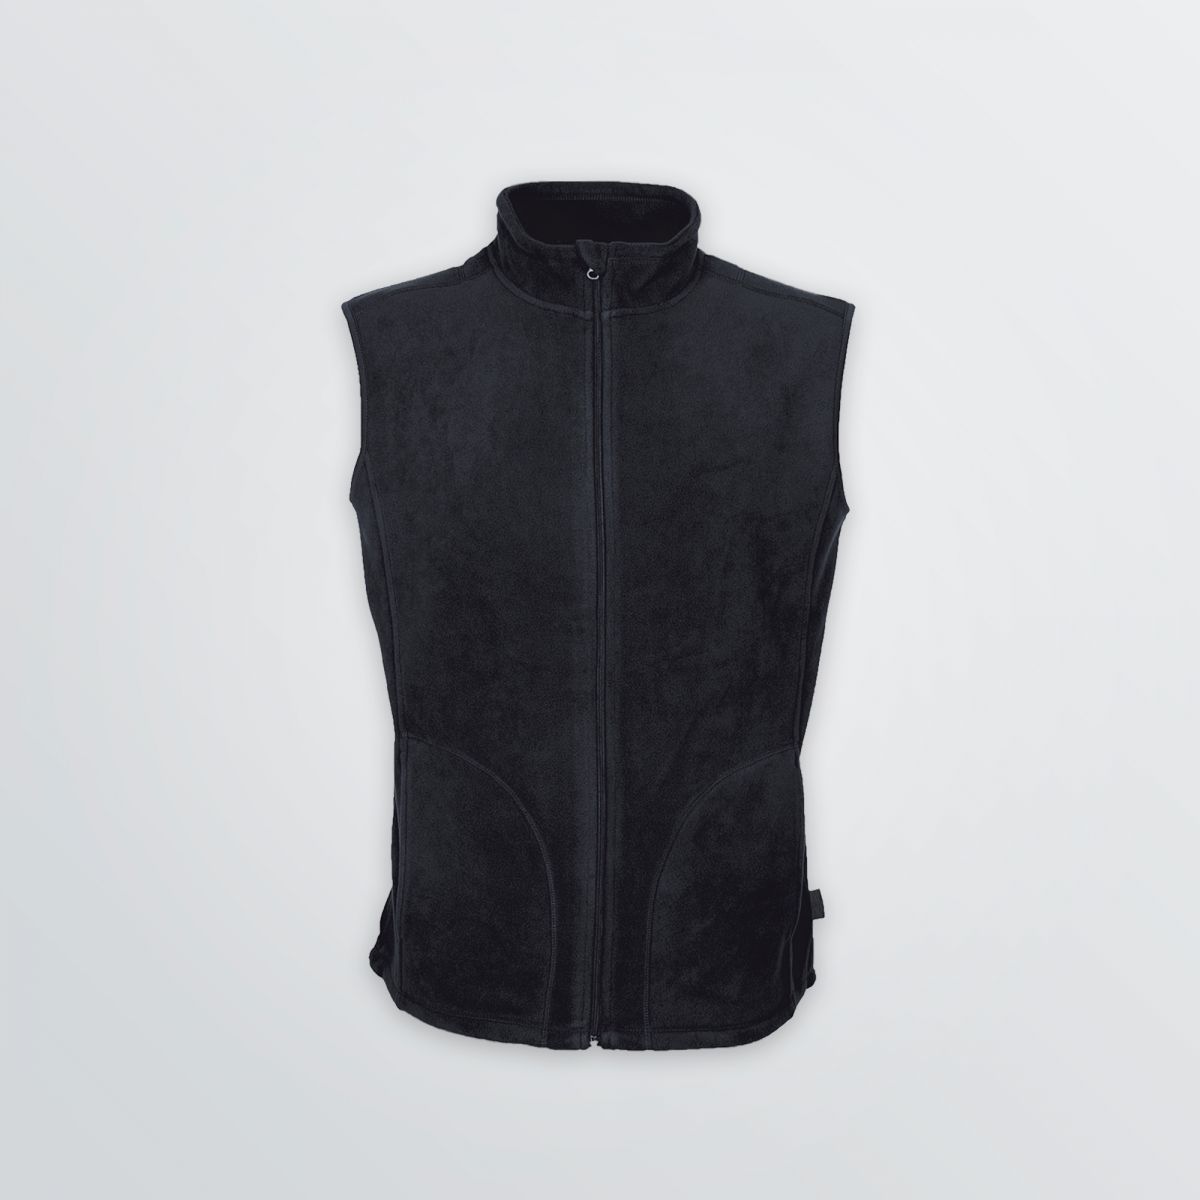 Weiche Basic Fleece Vest mit Individualisierungsoptionen als Produktbeispiel in schwarz mit praktischen Reißverschlusstaschen - Frontansicht